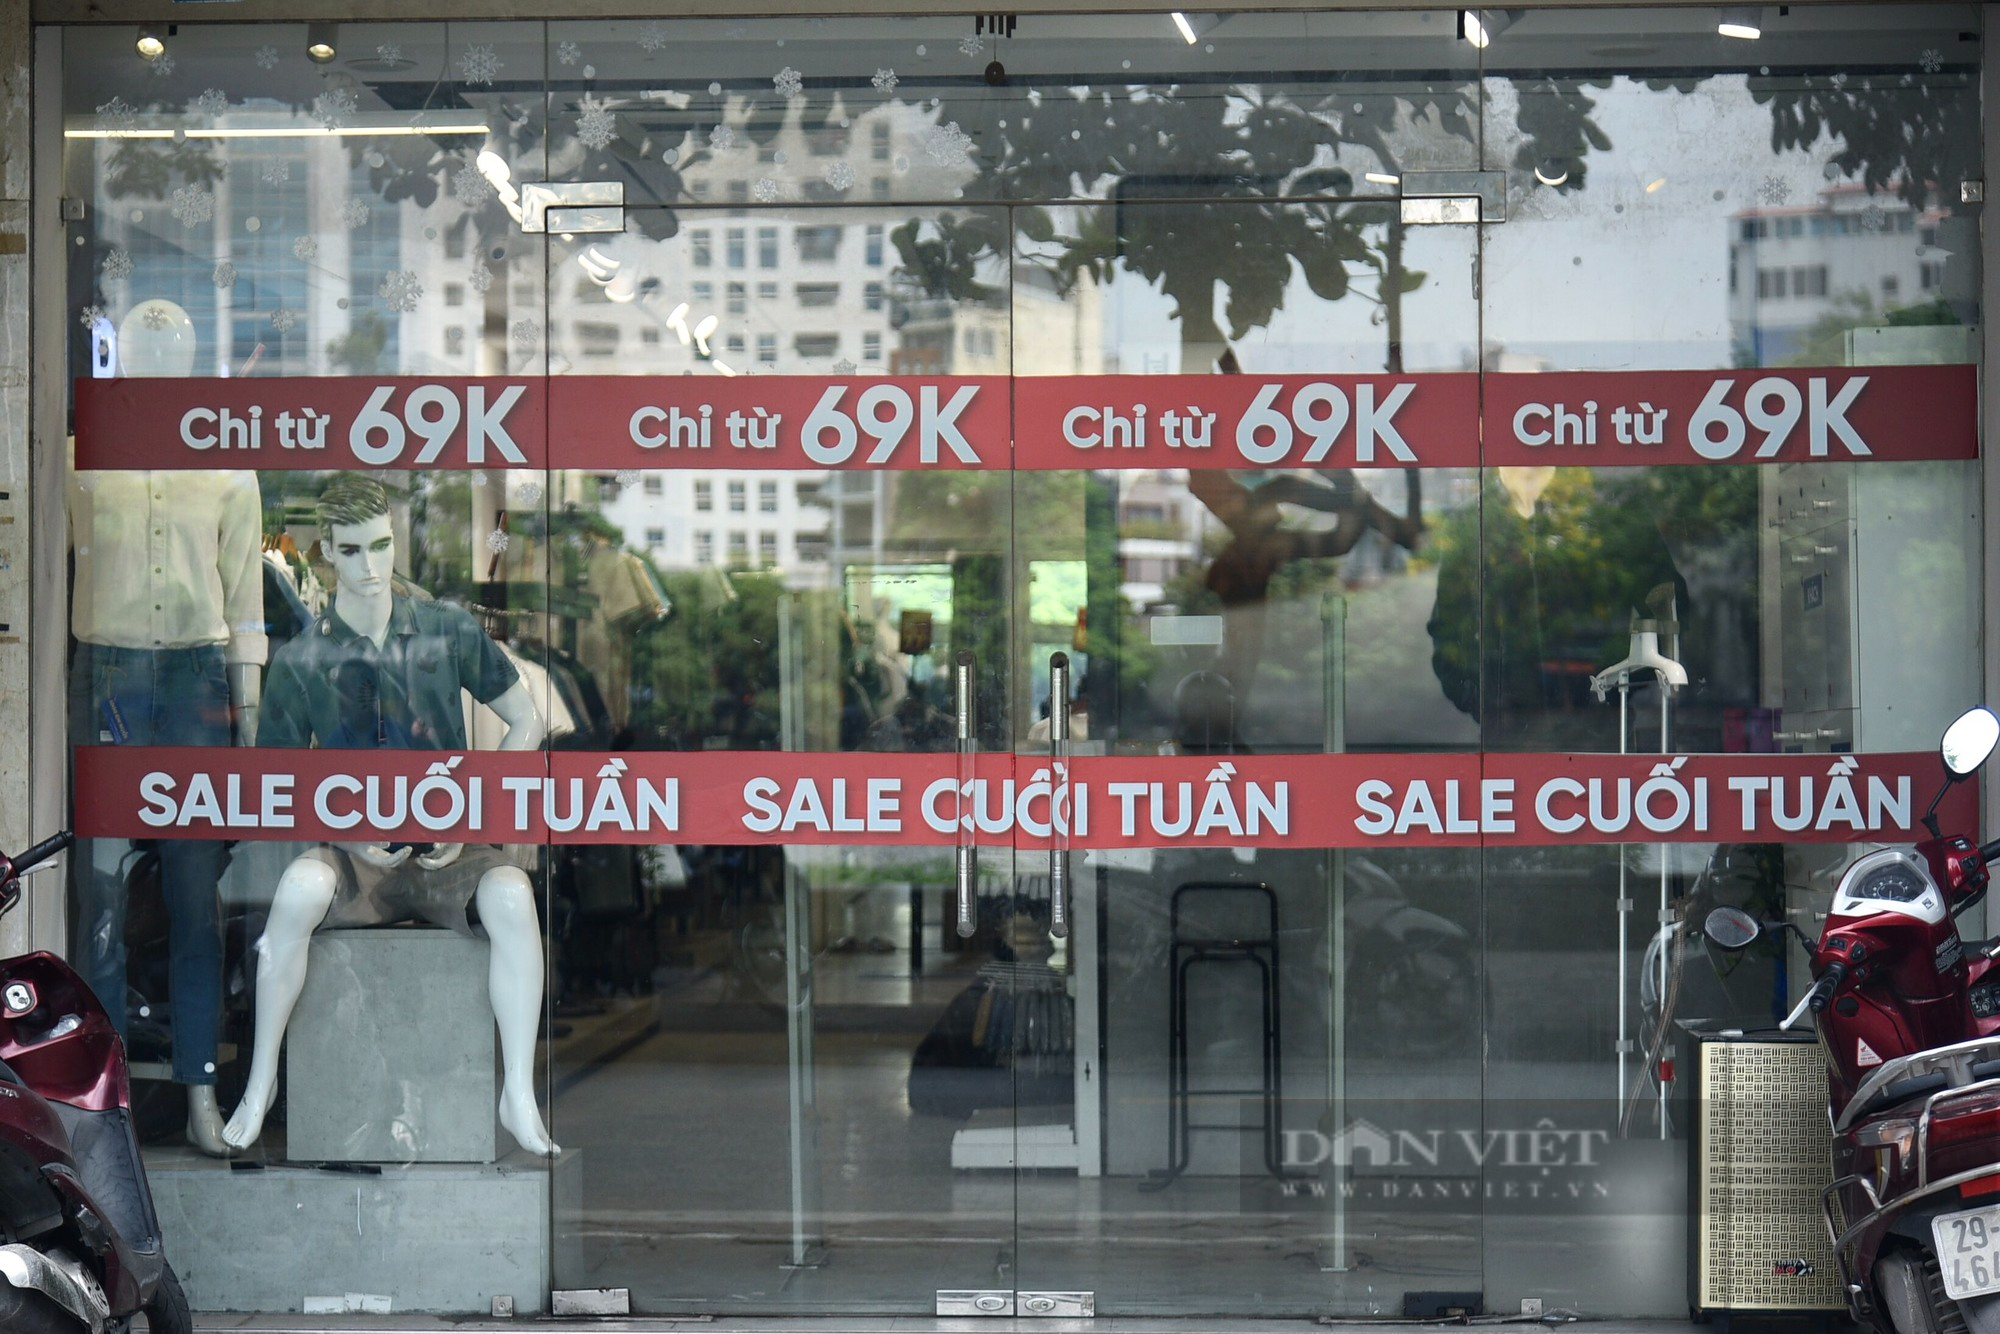 Hàng loạt cửa tiệm tại các tuyến phố thời trang Hà Nội giảm giá nhưng vẫn ế khách - Ảnh 8.